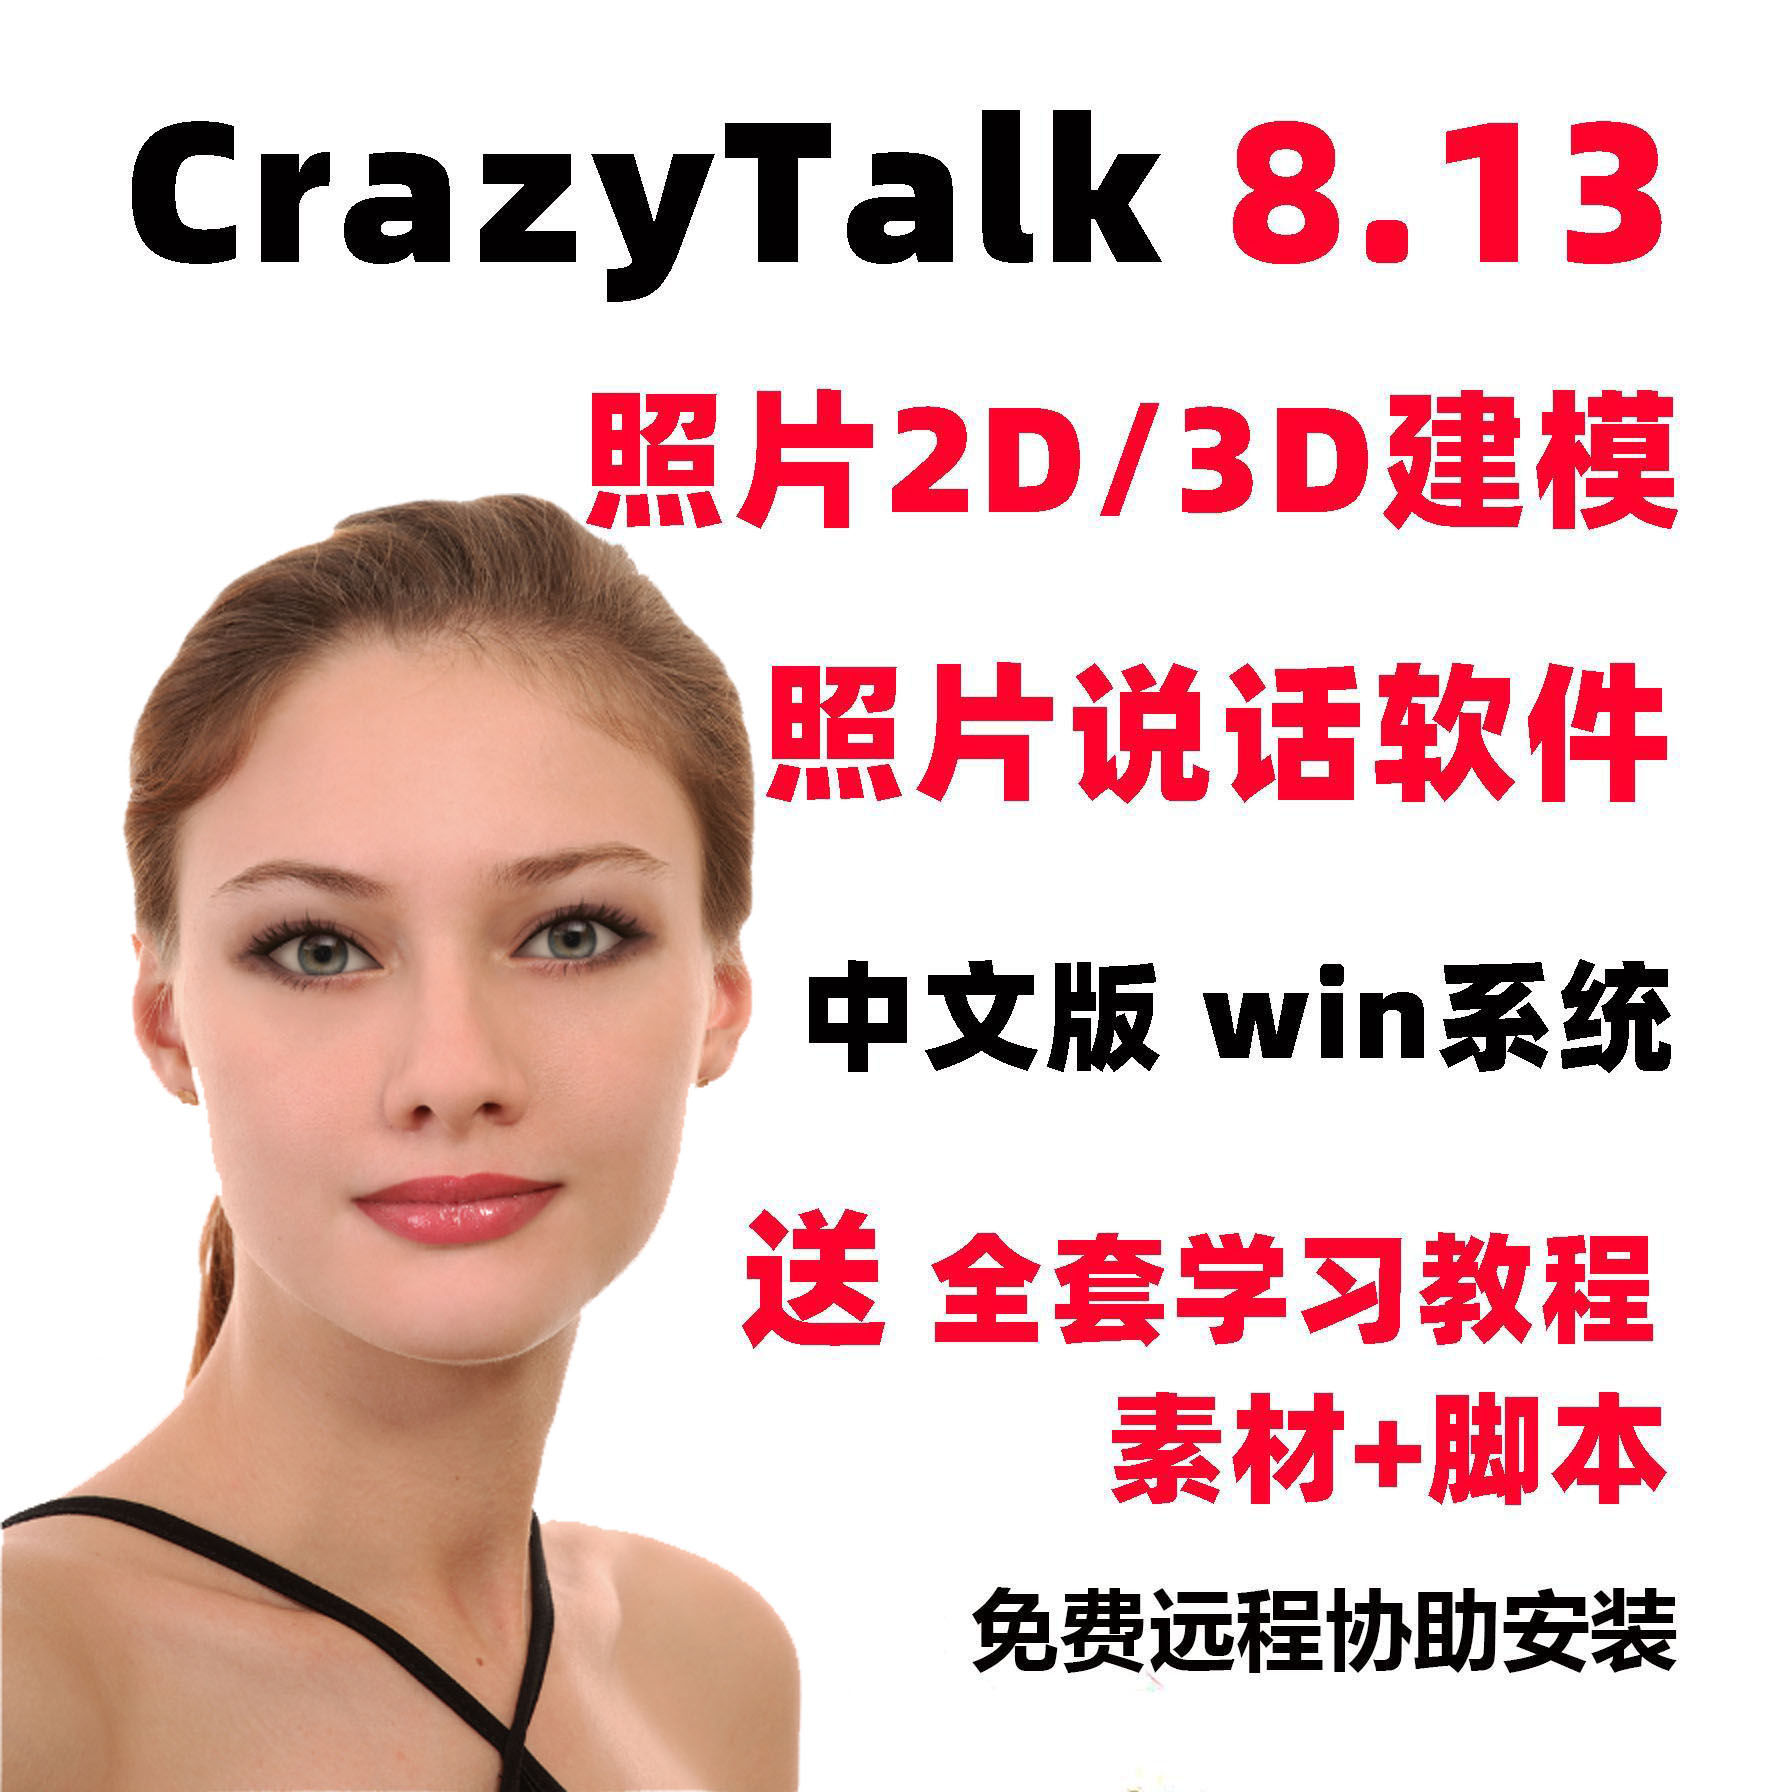 CrazyTalk8中文汉化版软件安装培训3D照片会说话动画制作教程脚本